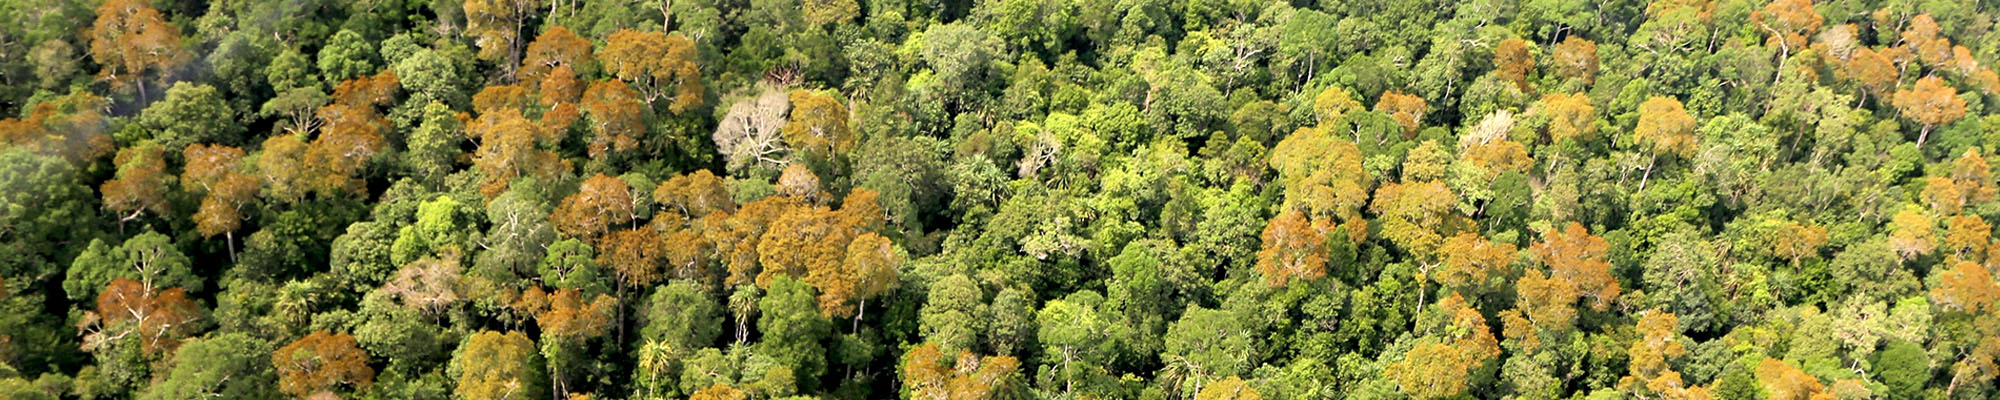 Canopée de forêt protégée sur tourbes naturelles (Sumatra, Indonésie). Alain Rival, © Cirad.